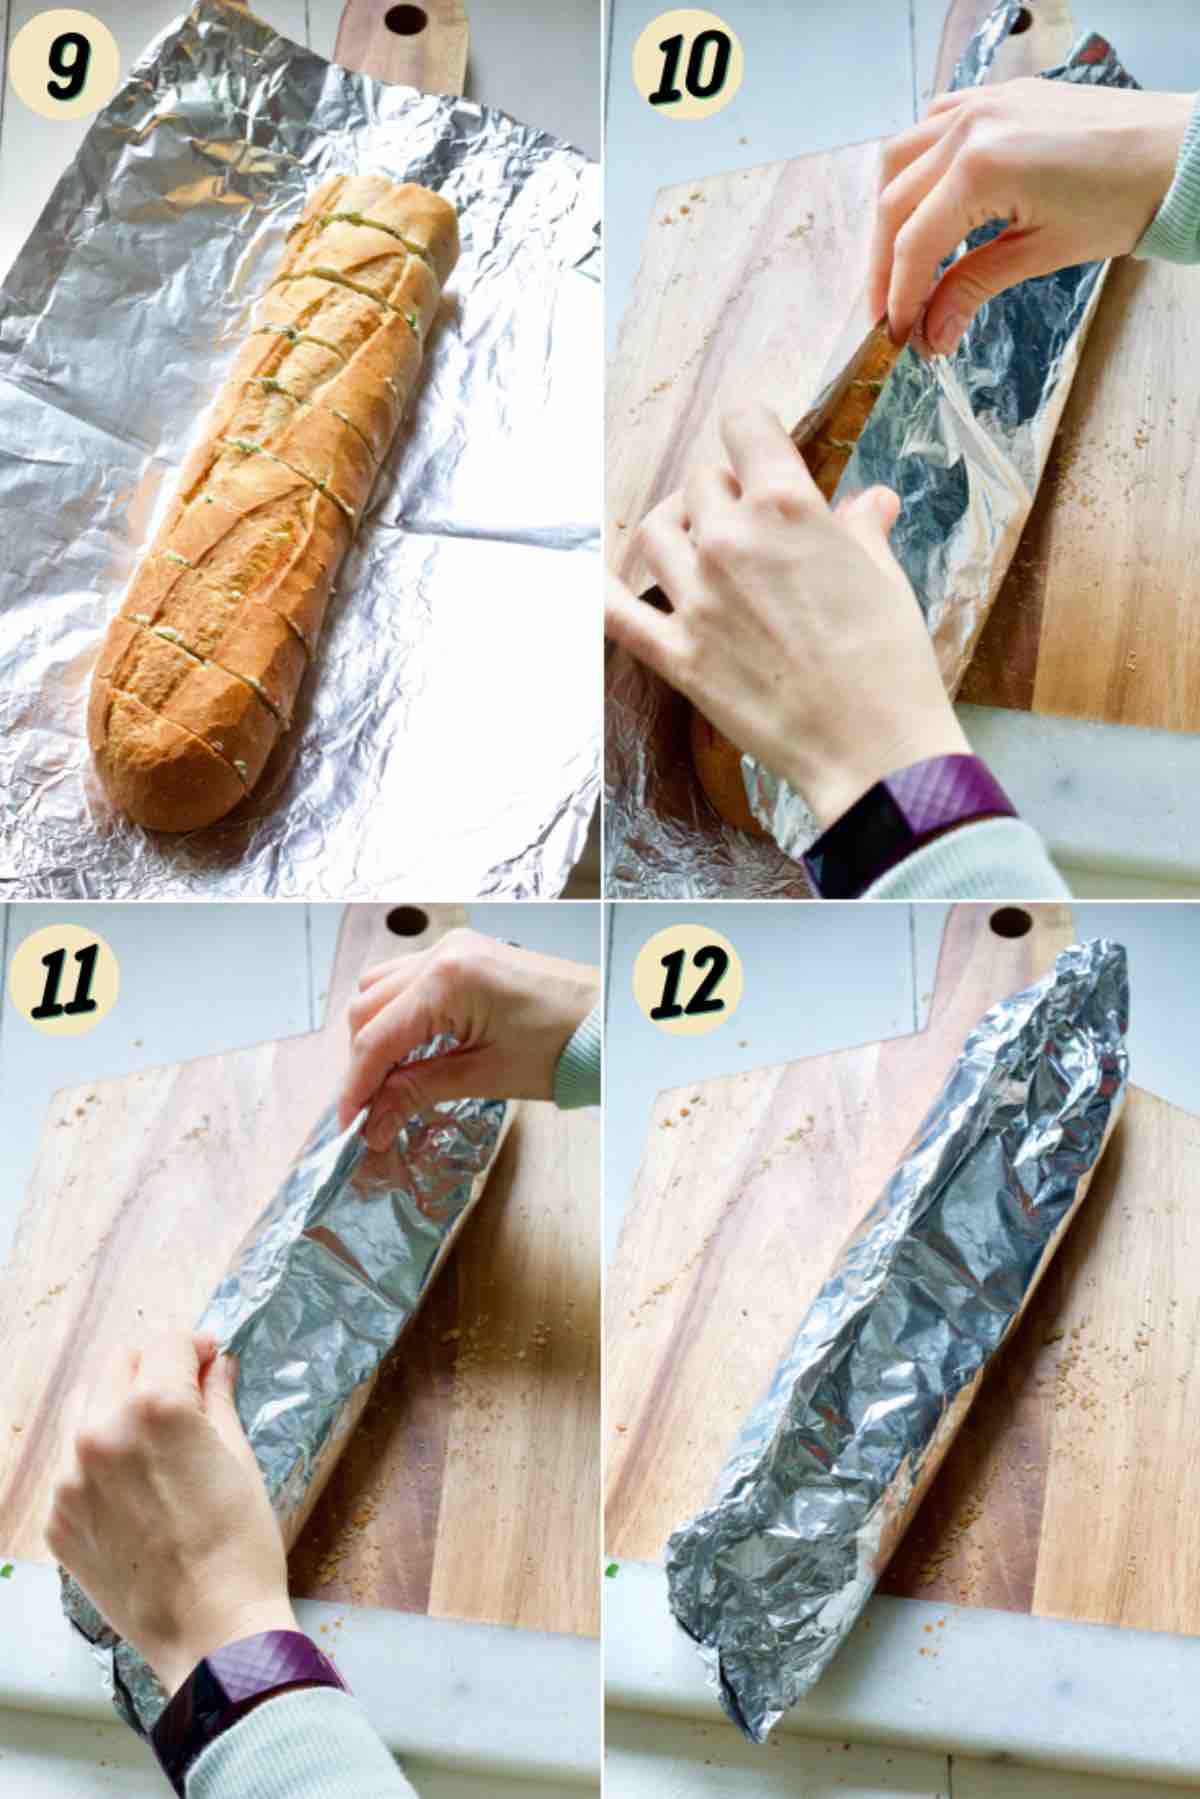 Wrapping bread in aluminium foil.